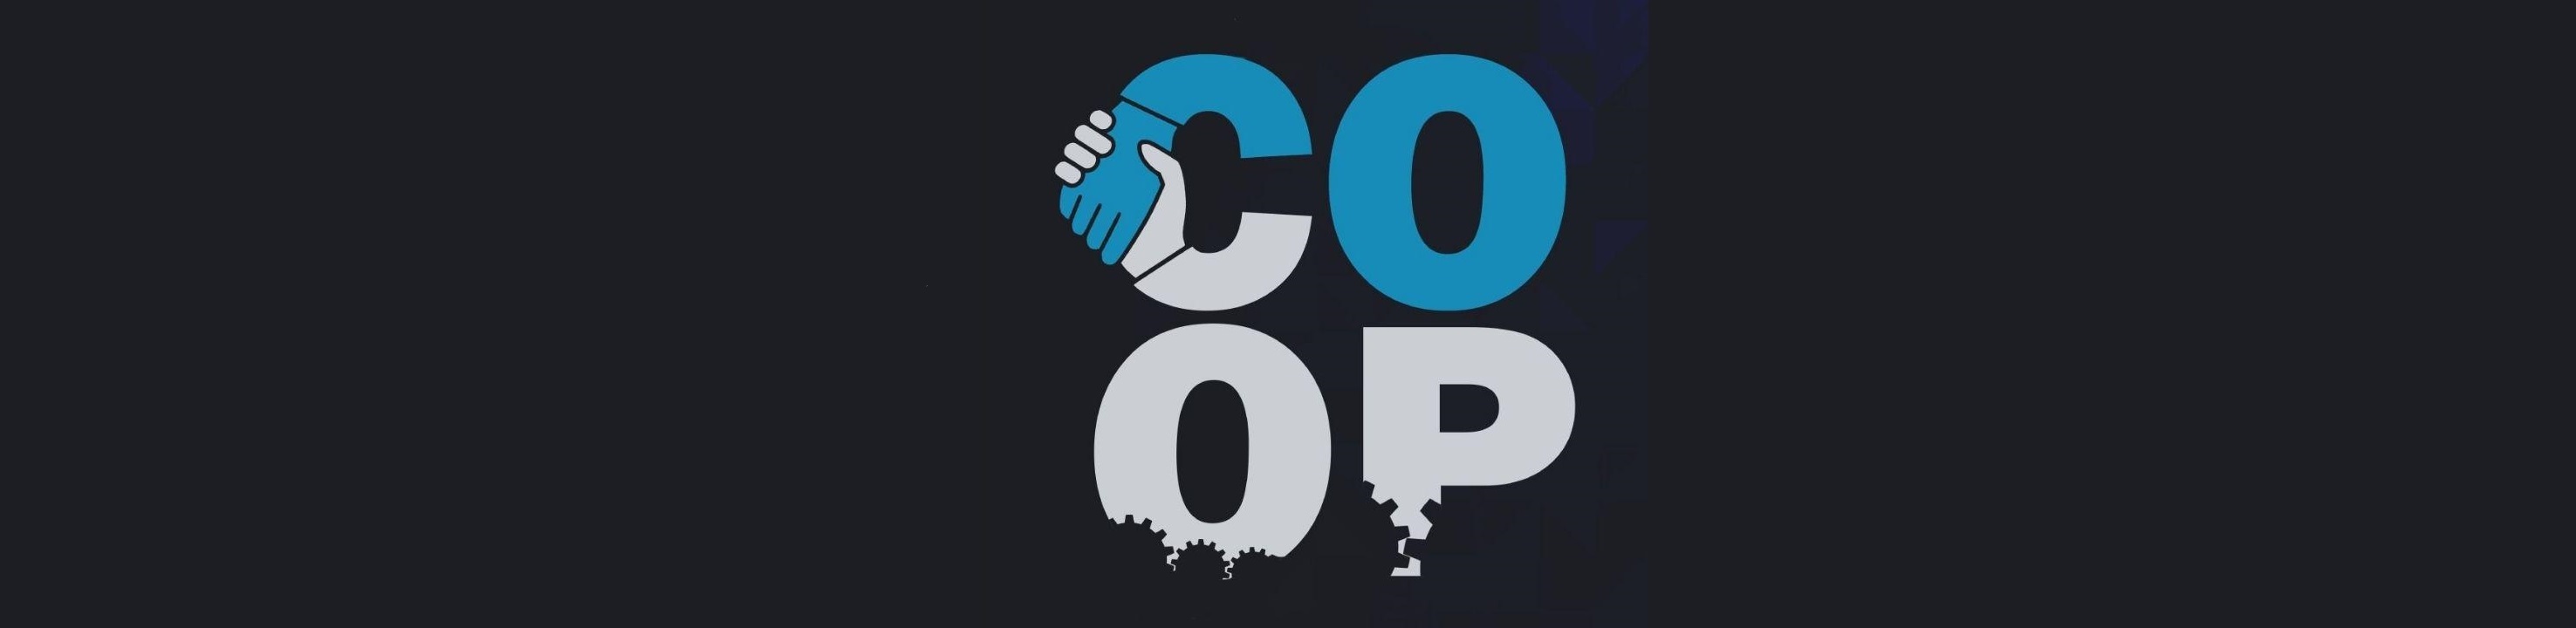 coop_logo.jpg